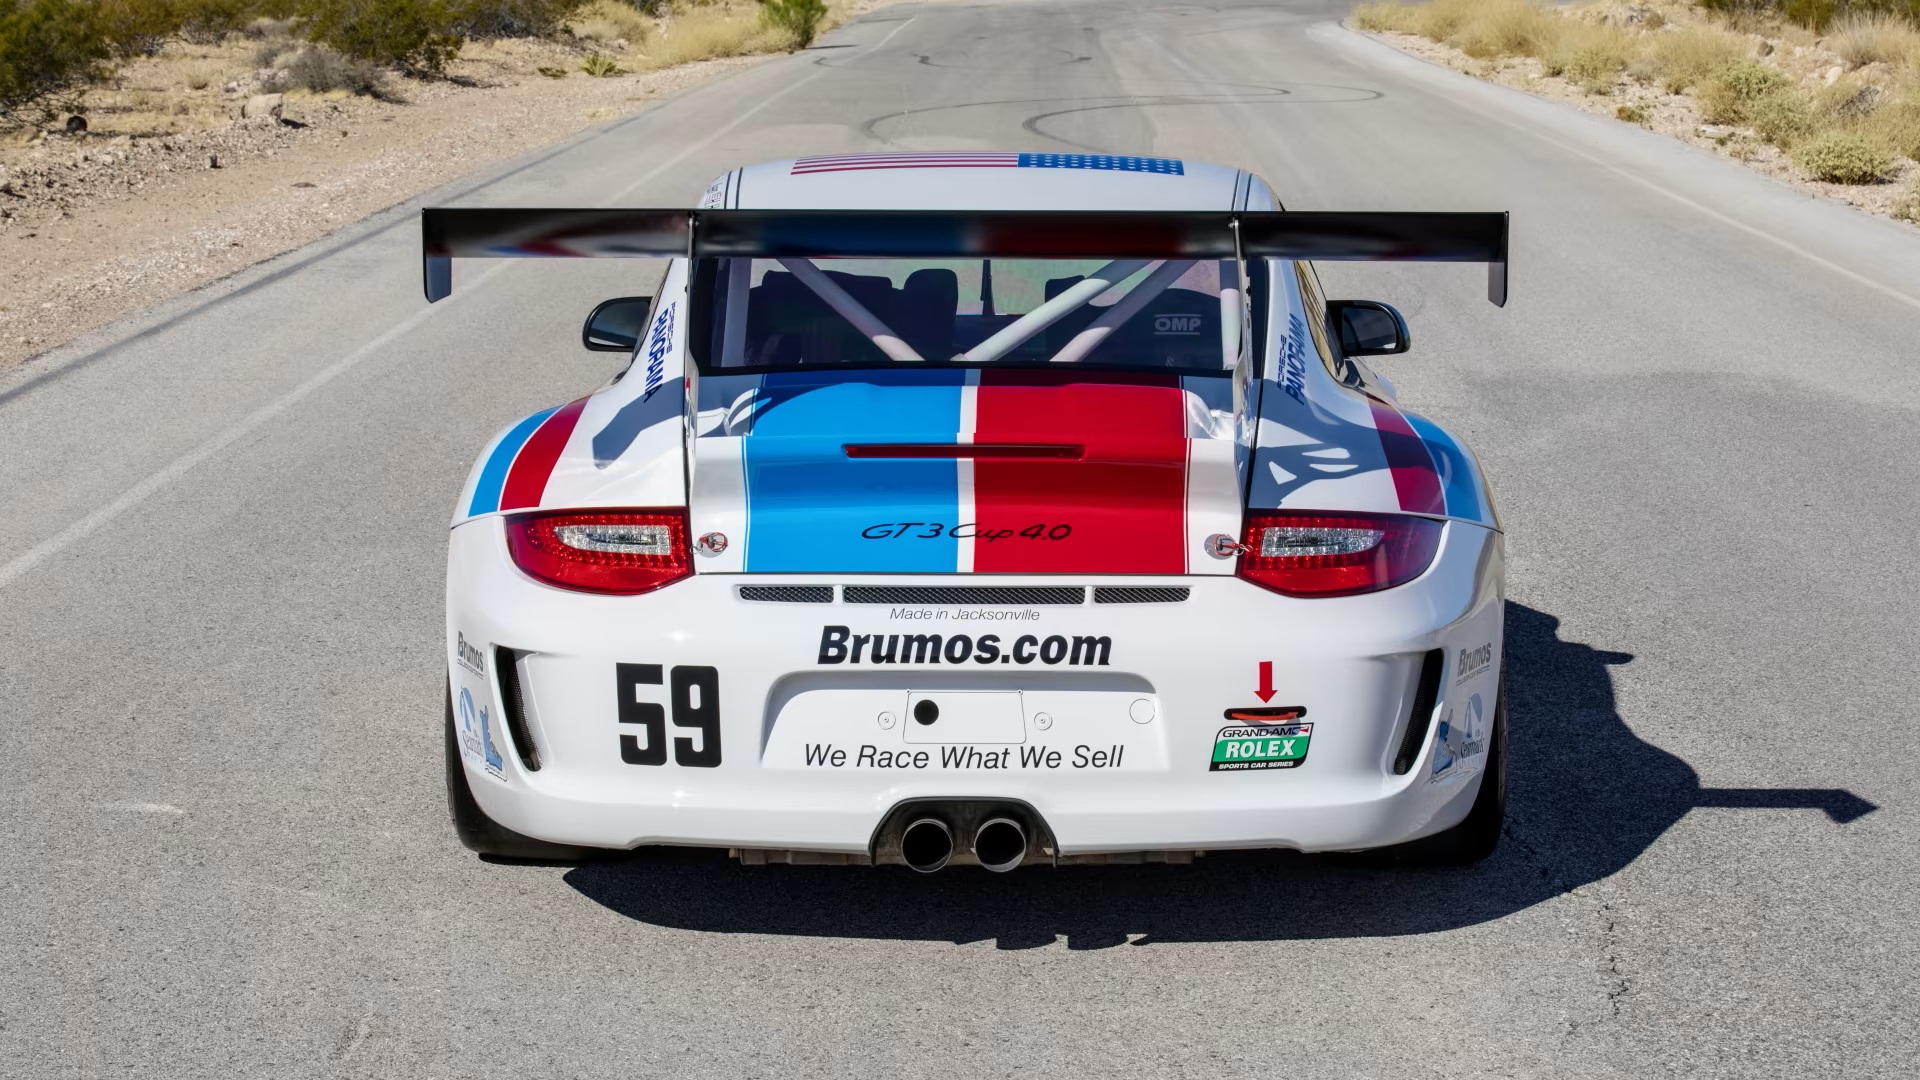 2012 Porsche 911 GT3 Cup 4.0 Brumos Edition